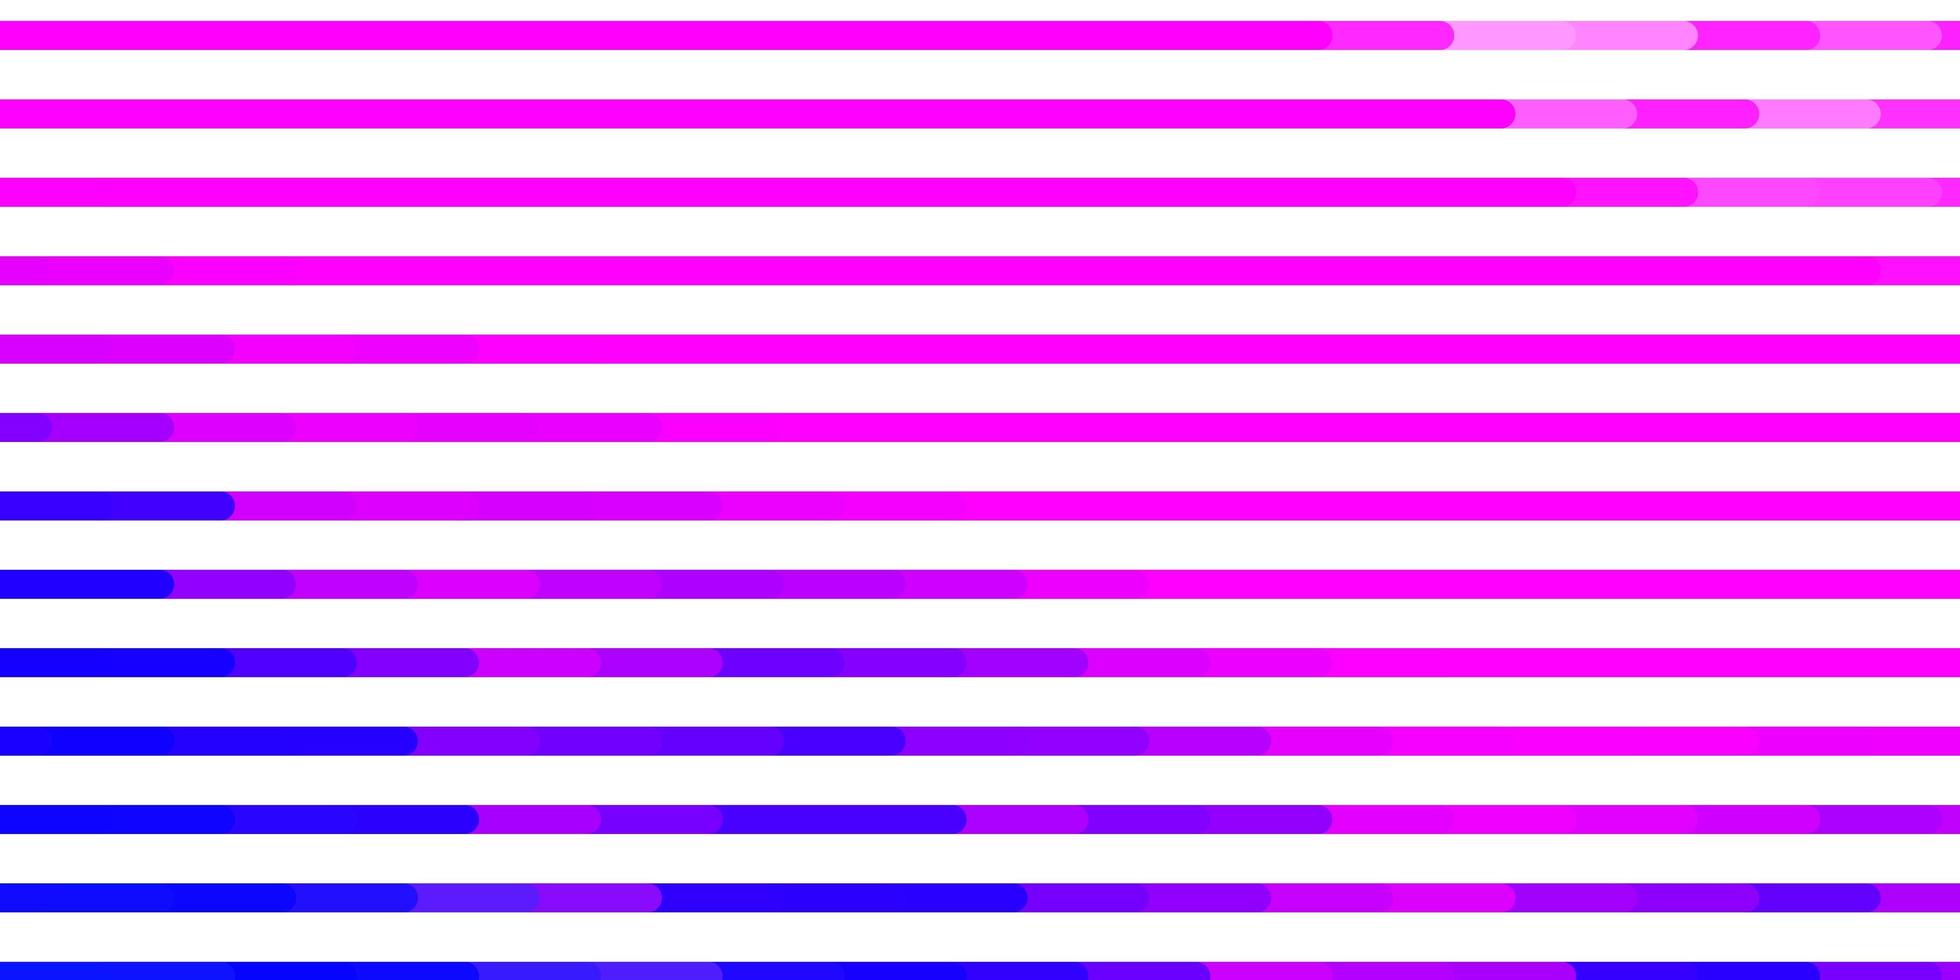 sfondo vettoriale rosa chiaro, blu con linee. illustrazione astratta moderna con linee colorate. modello per annunci, spot pubblicitari.